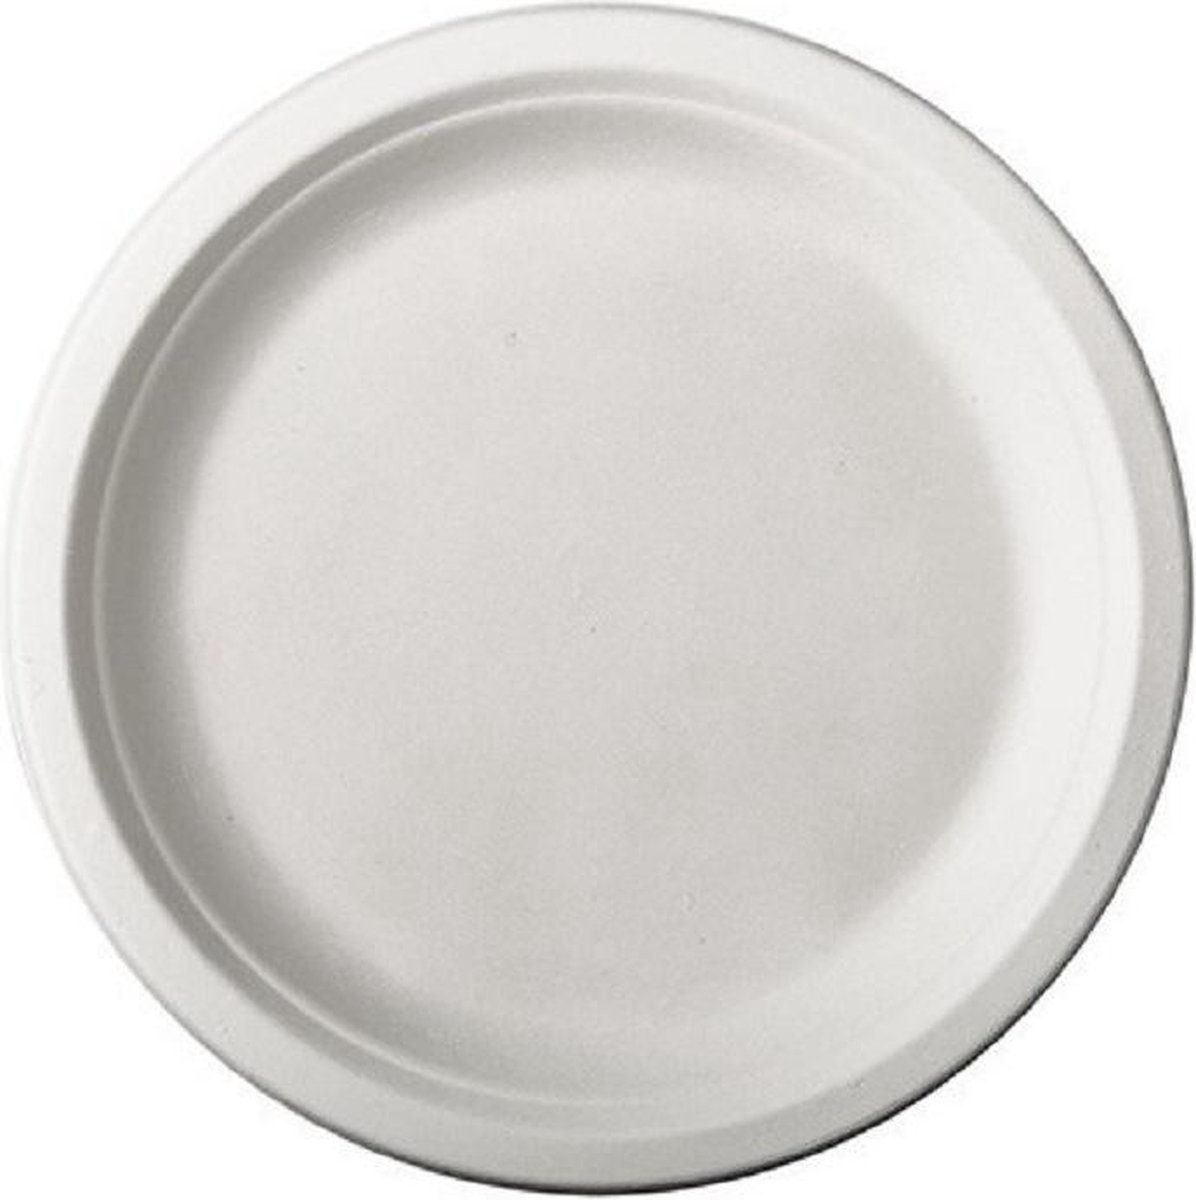 72x Witte suikerriet dinerbordjes 26 cm biologisch afbreekbaar - Ronde wegwerp bordjes - Pure tableware - Duurzame materialen - Milieuvriendelijke wegwerpservies borden - Ecologisch verantwoord